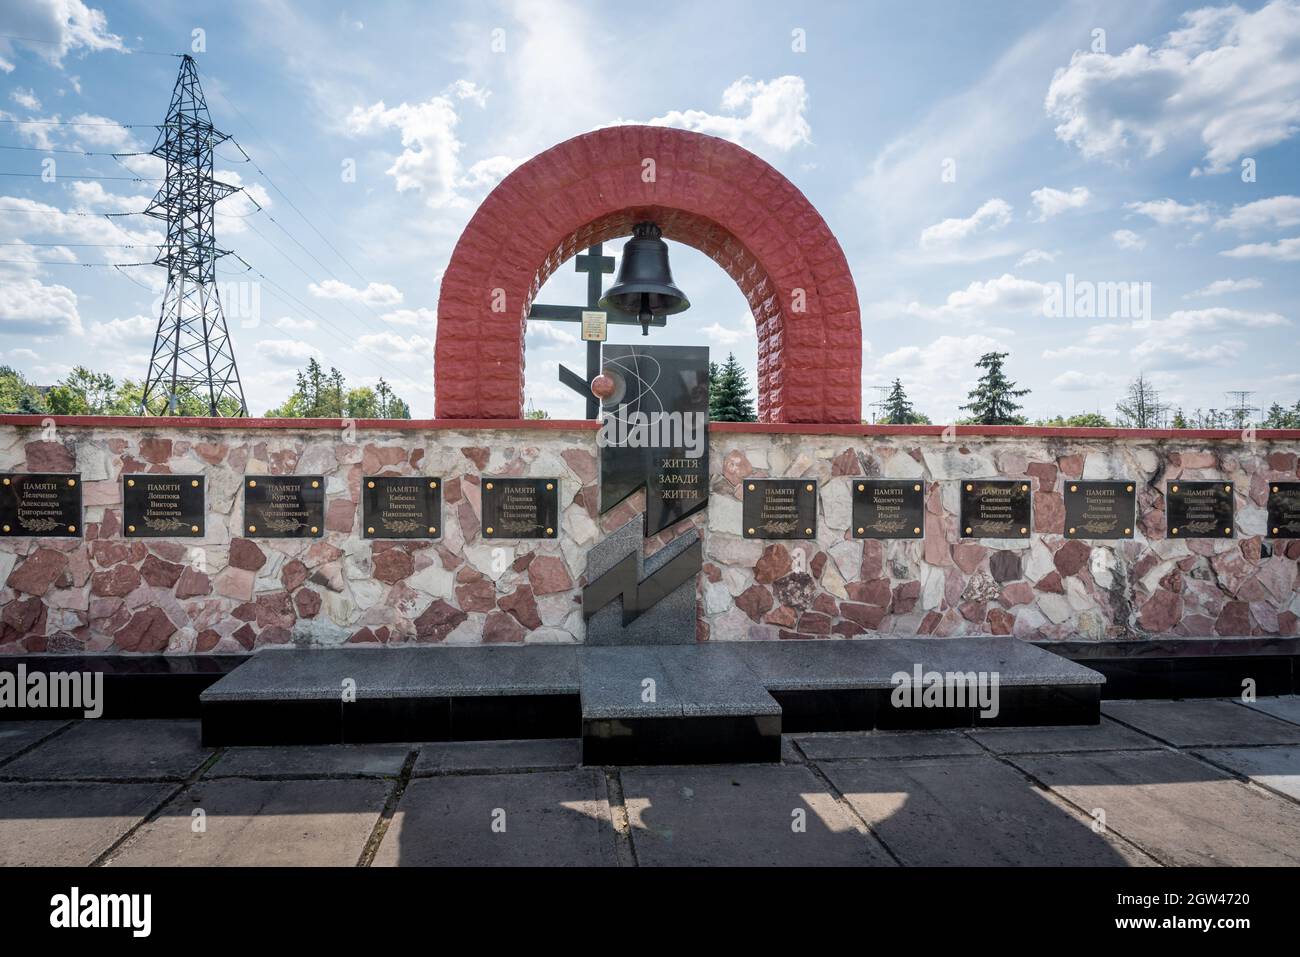 Memorial Life for Life en la central nuclear de Chernobyl - muro monumento con nombres de víctimas del desastre de Chernobyl - Zona de exclusión de Chernobyl, Ucrania Foto de stock